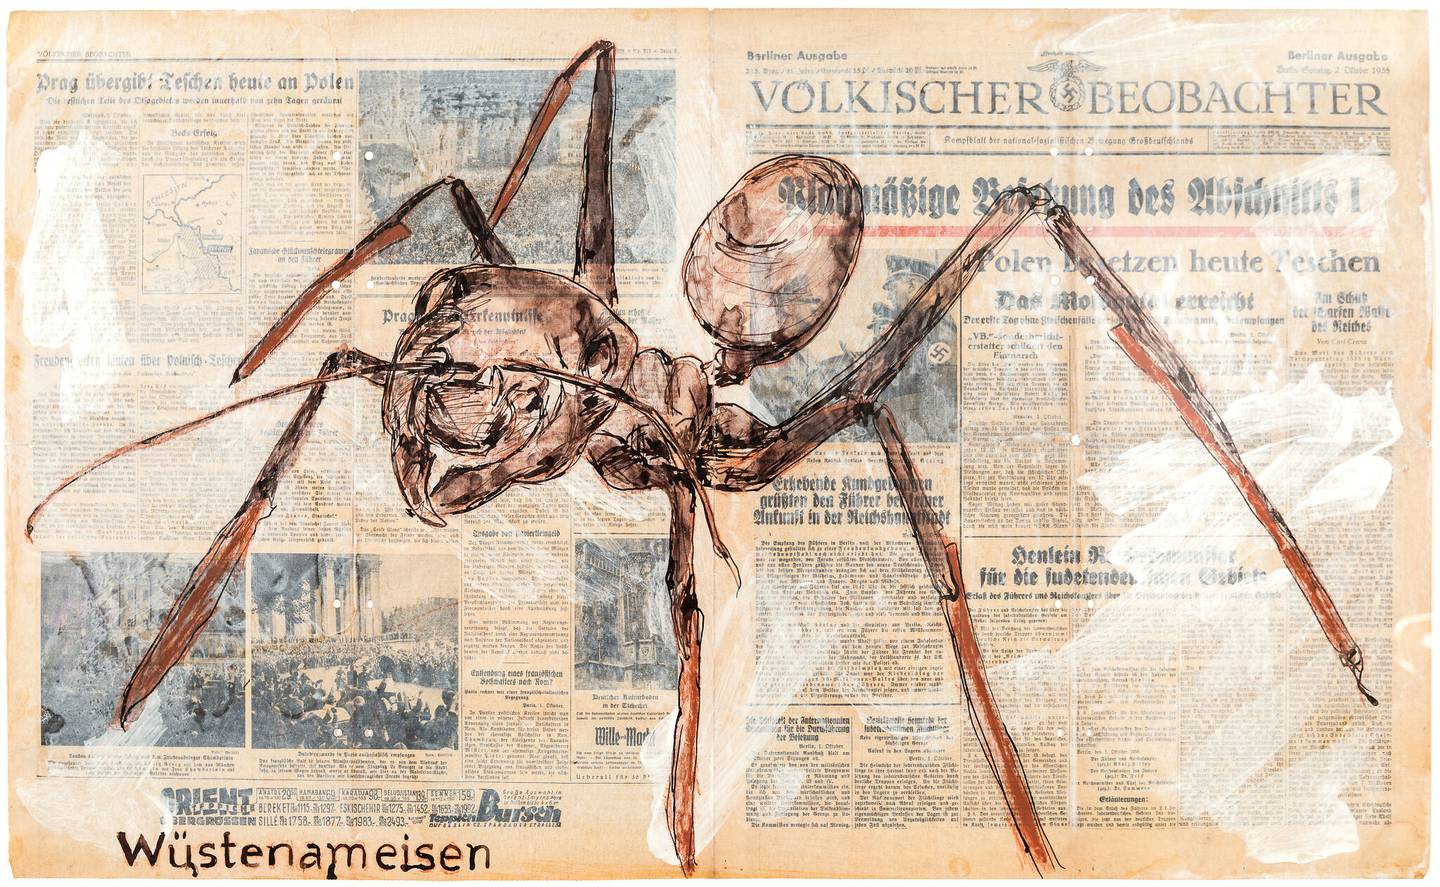 Imagem mostra jornal com uma aranha desenhada sobre as notícias.